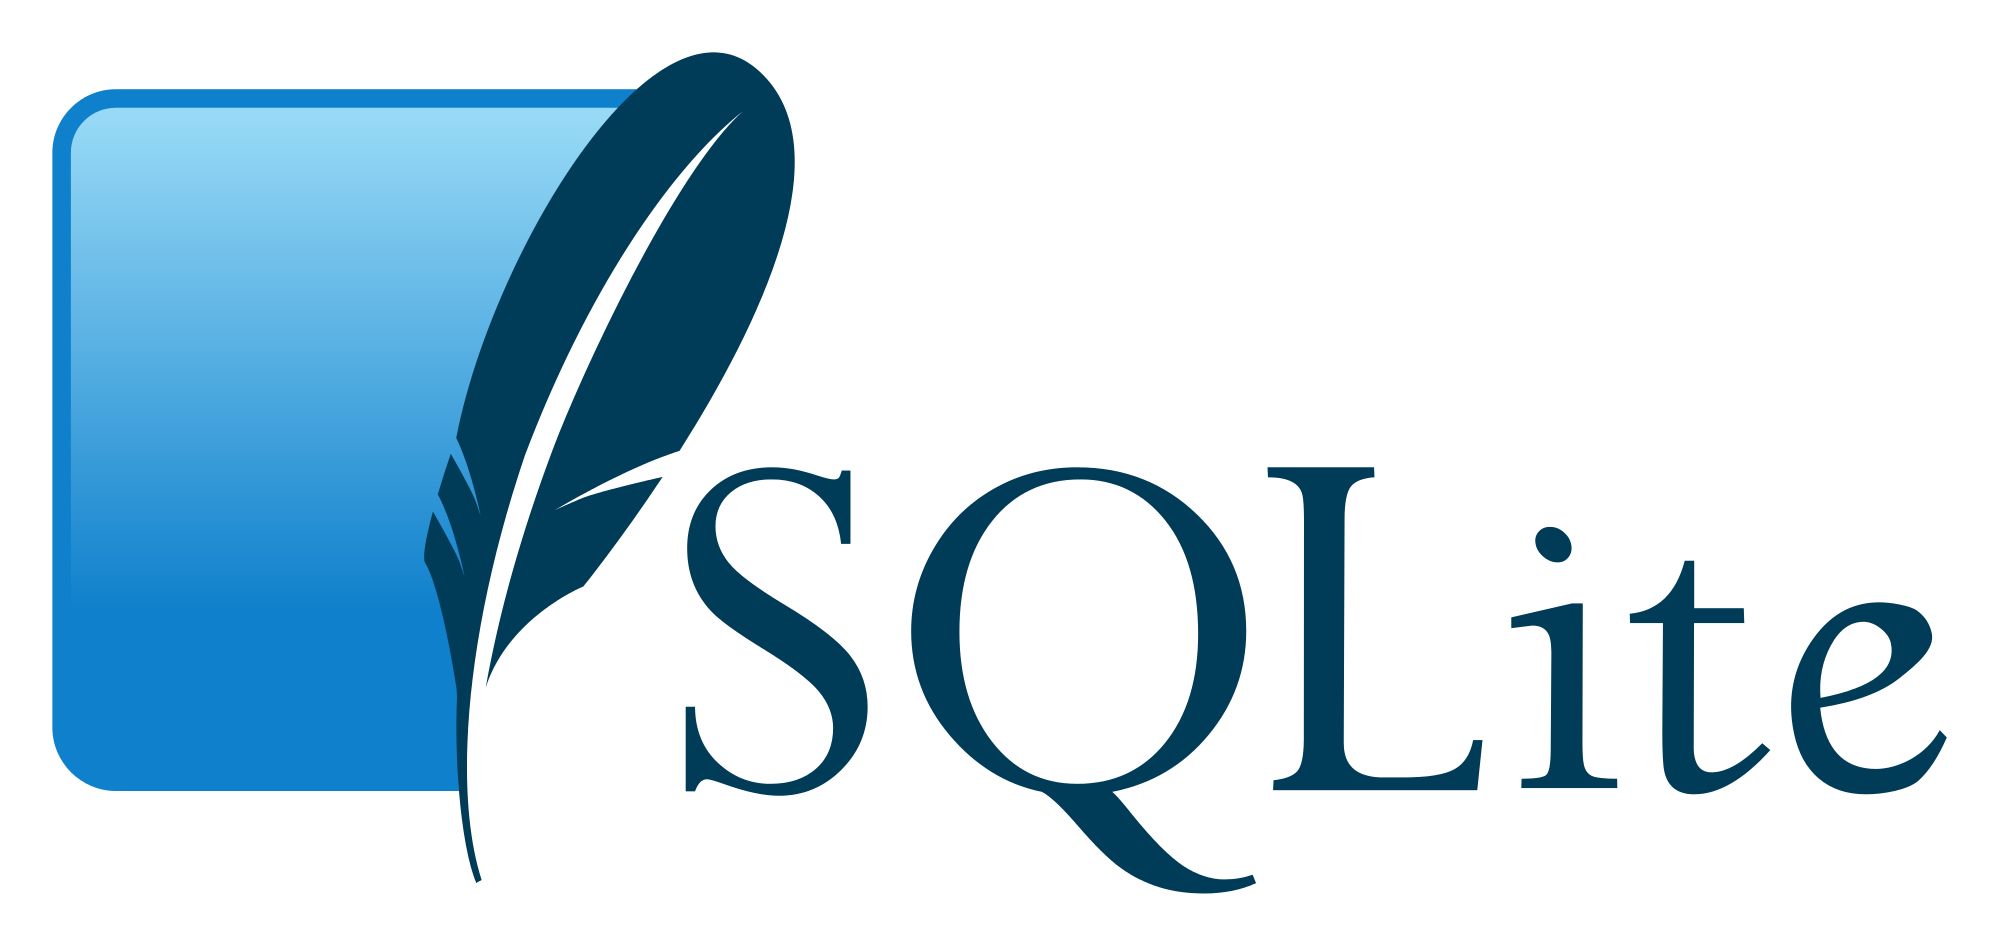 Xx Mom Ko Jbrdsti - SQLite370 base de datos relacional compatible con Windows 10 IOT - Aleph  Software, s.a.